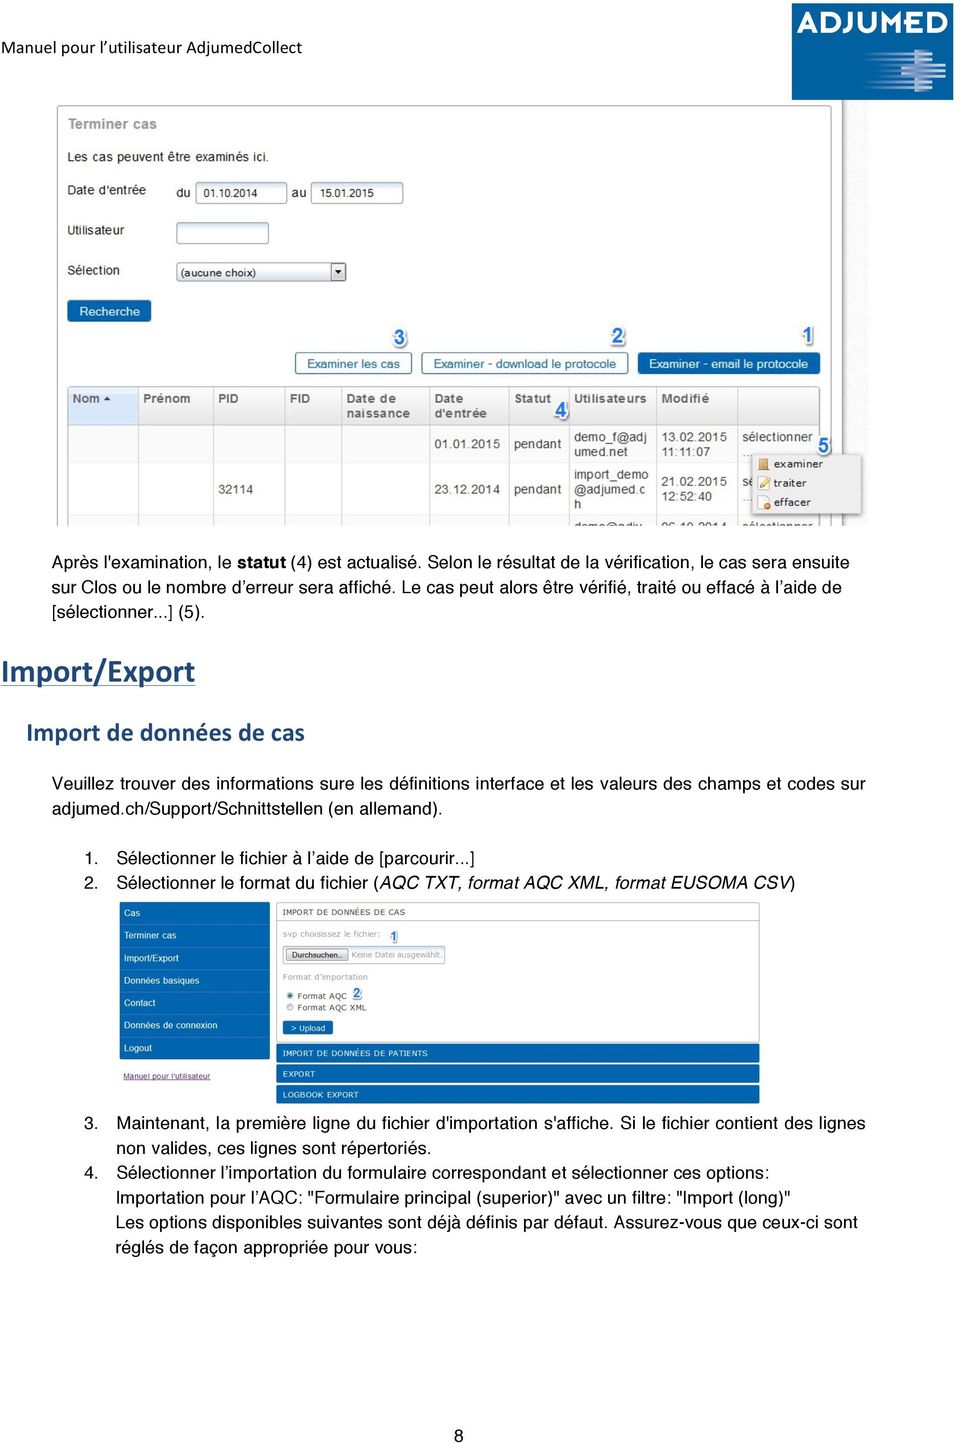 Import/Export Import de données de cas Veuillez trouver des informations sure les définitions interface et les valeurs des champs et codes sur adjumed.ch/support/schnittstellen (en allemand). 1.